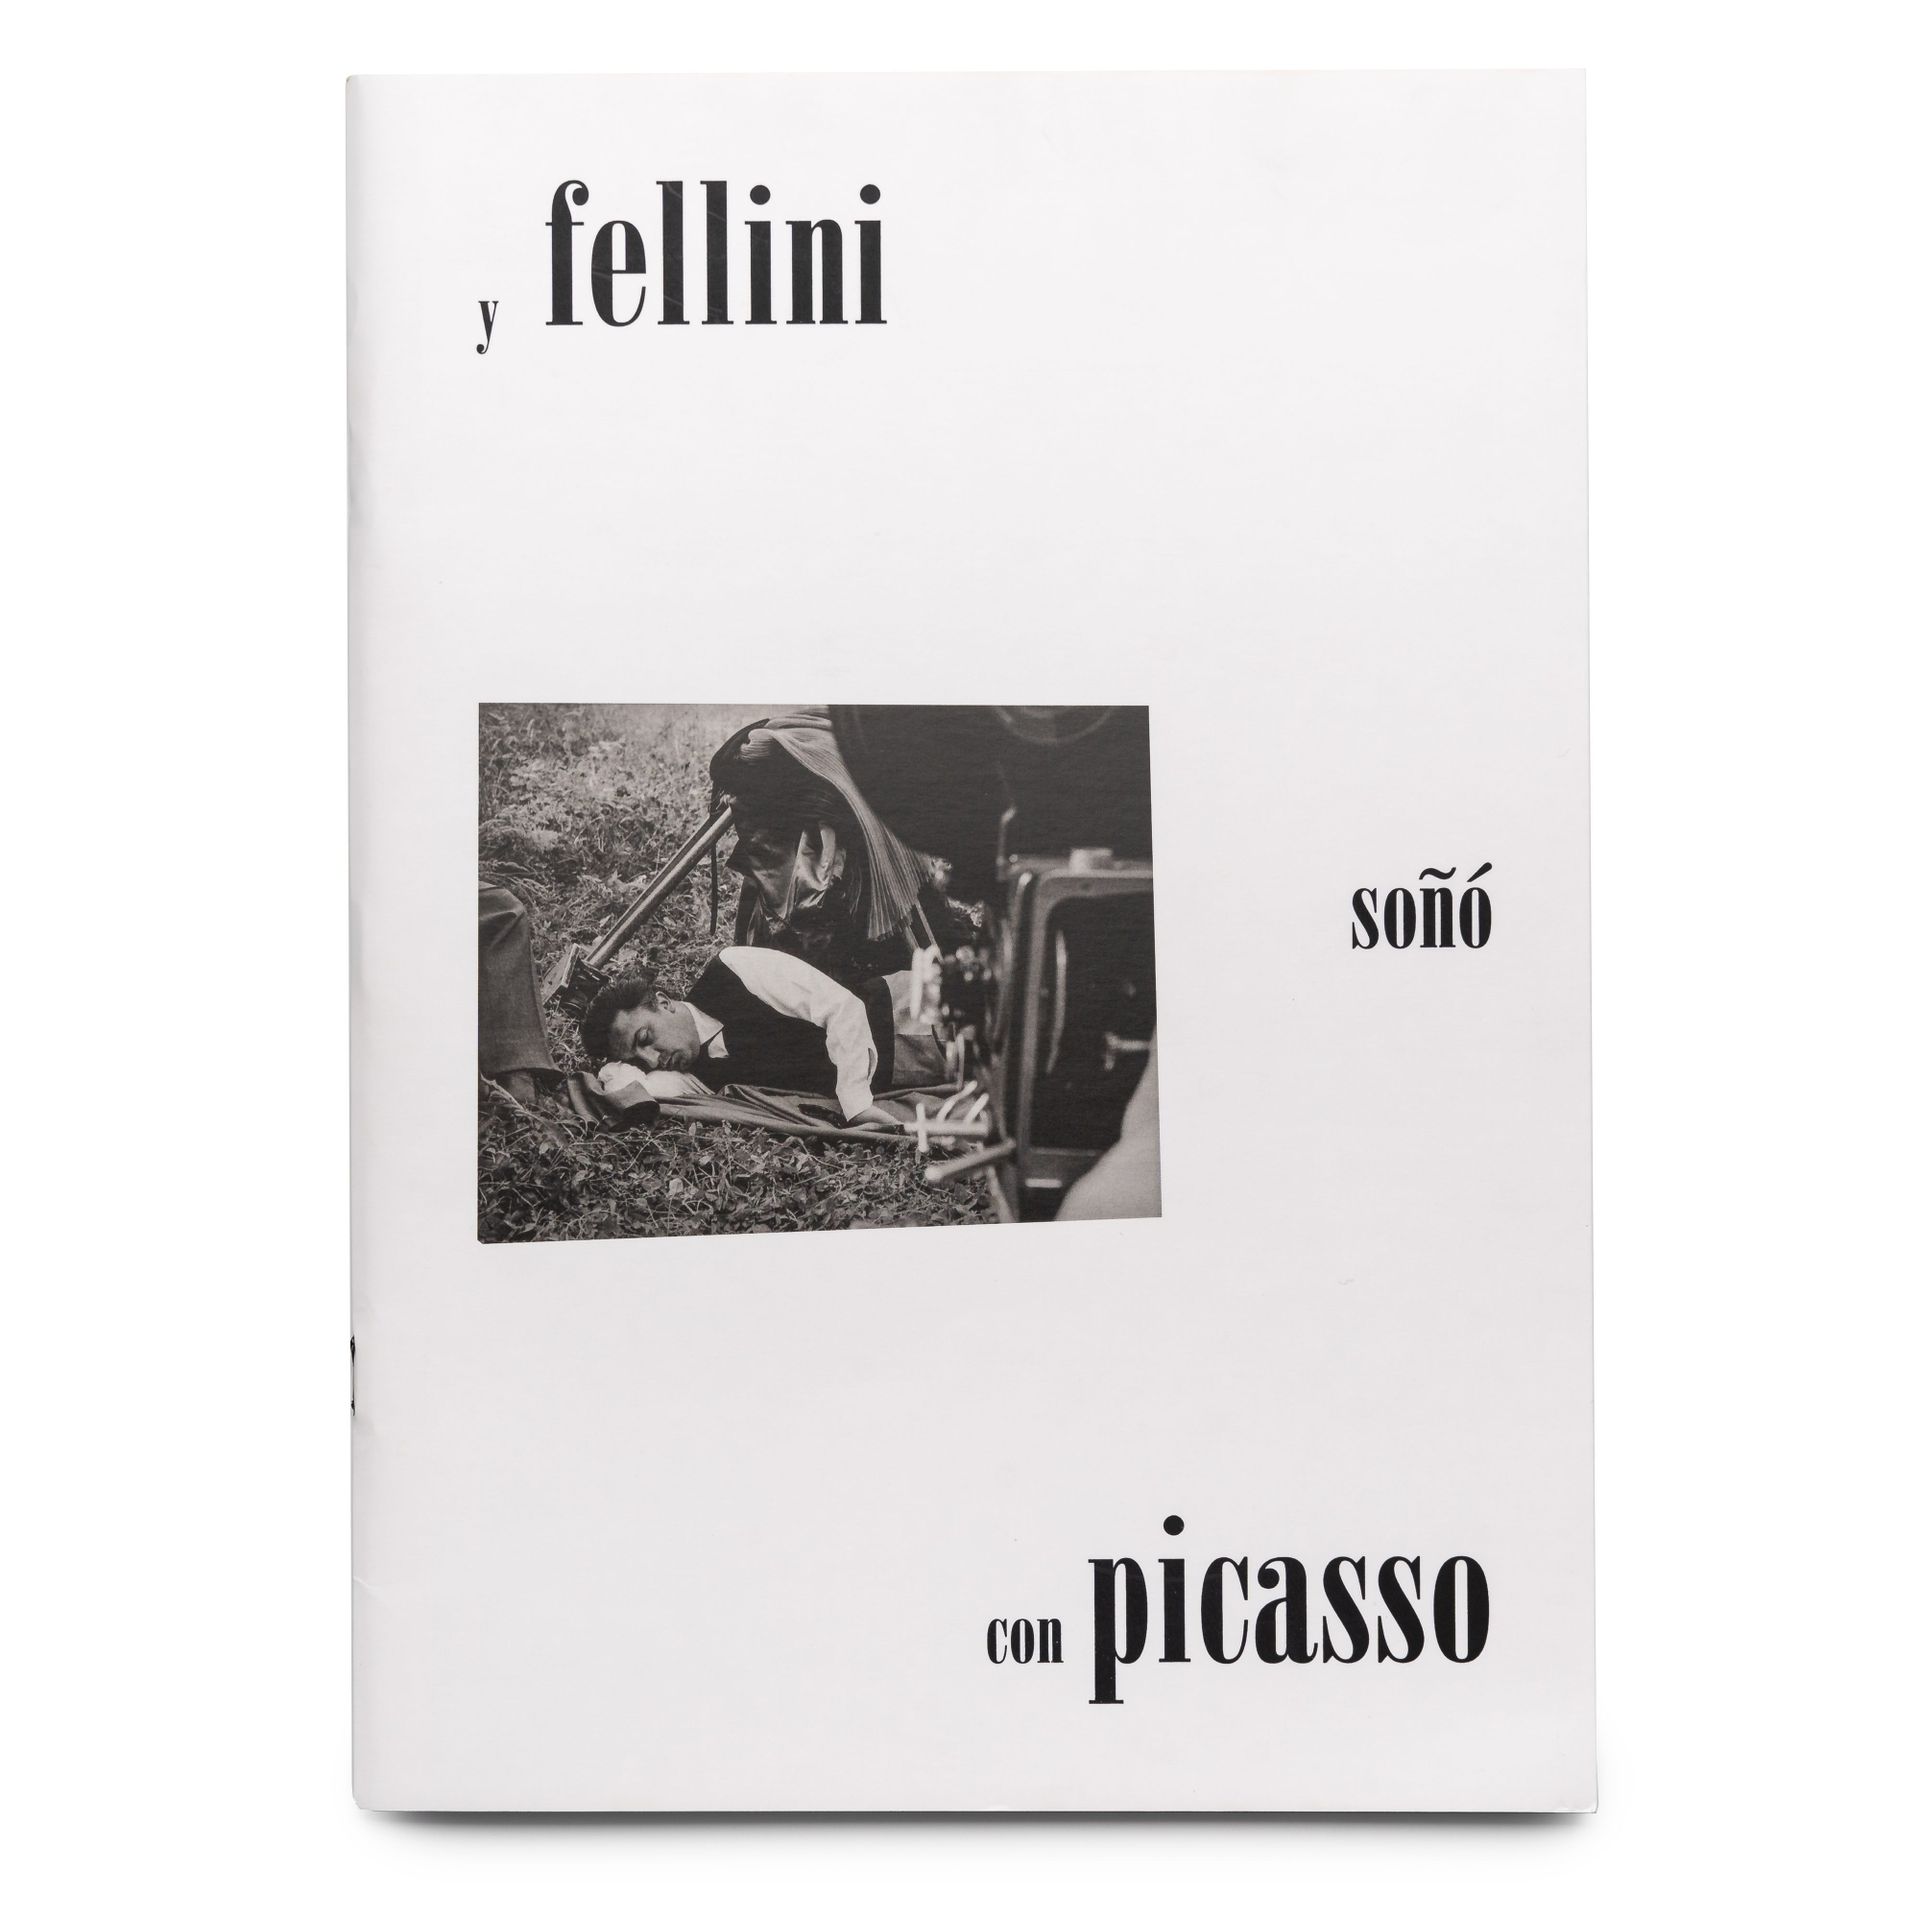 2018_Picasso. Fellini-4